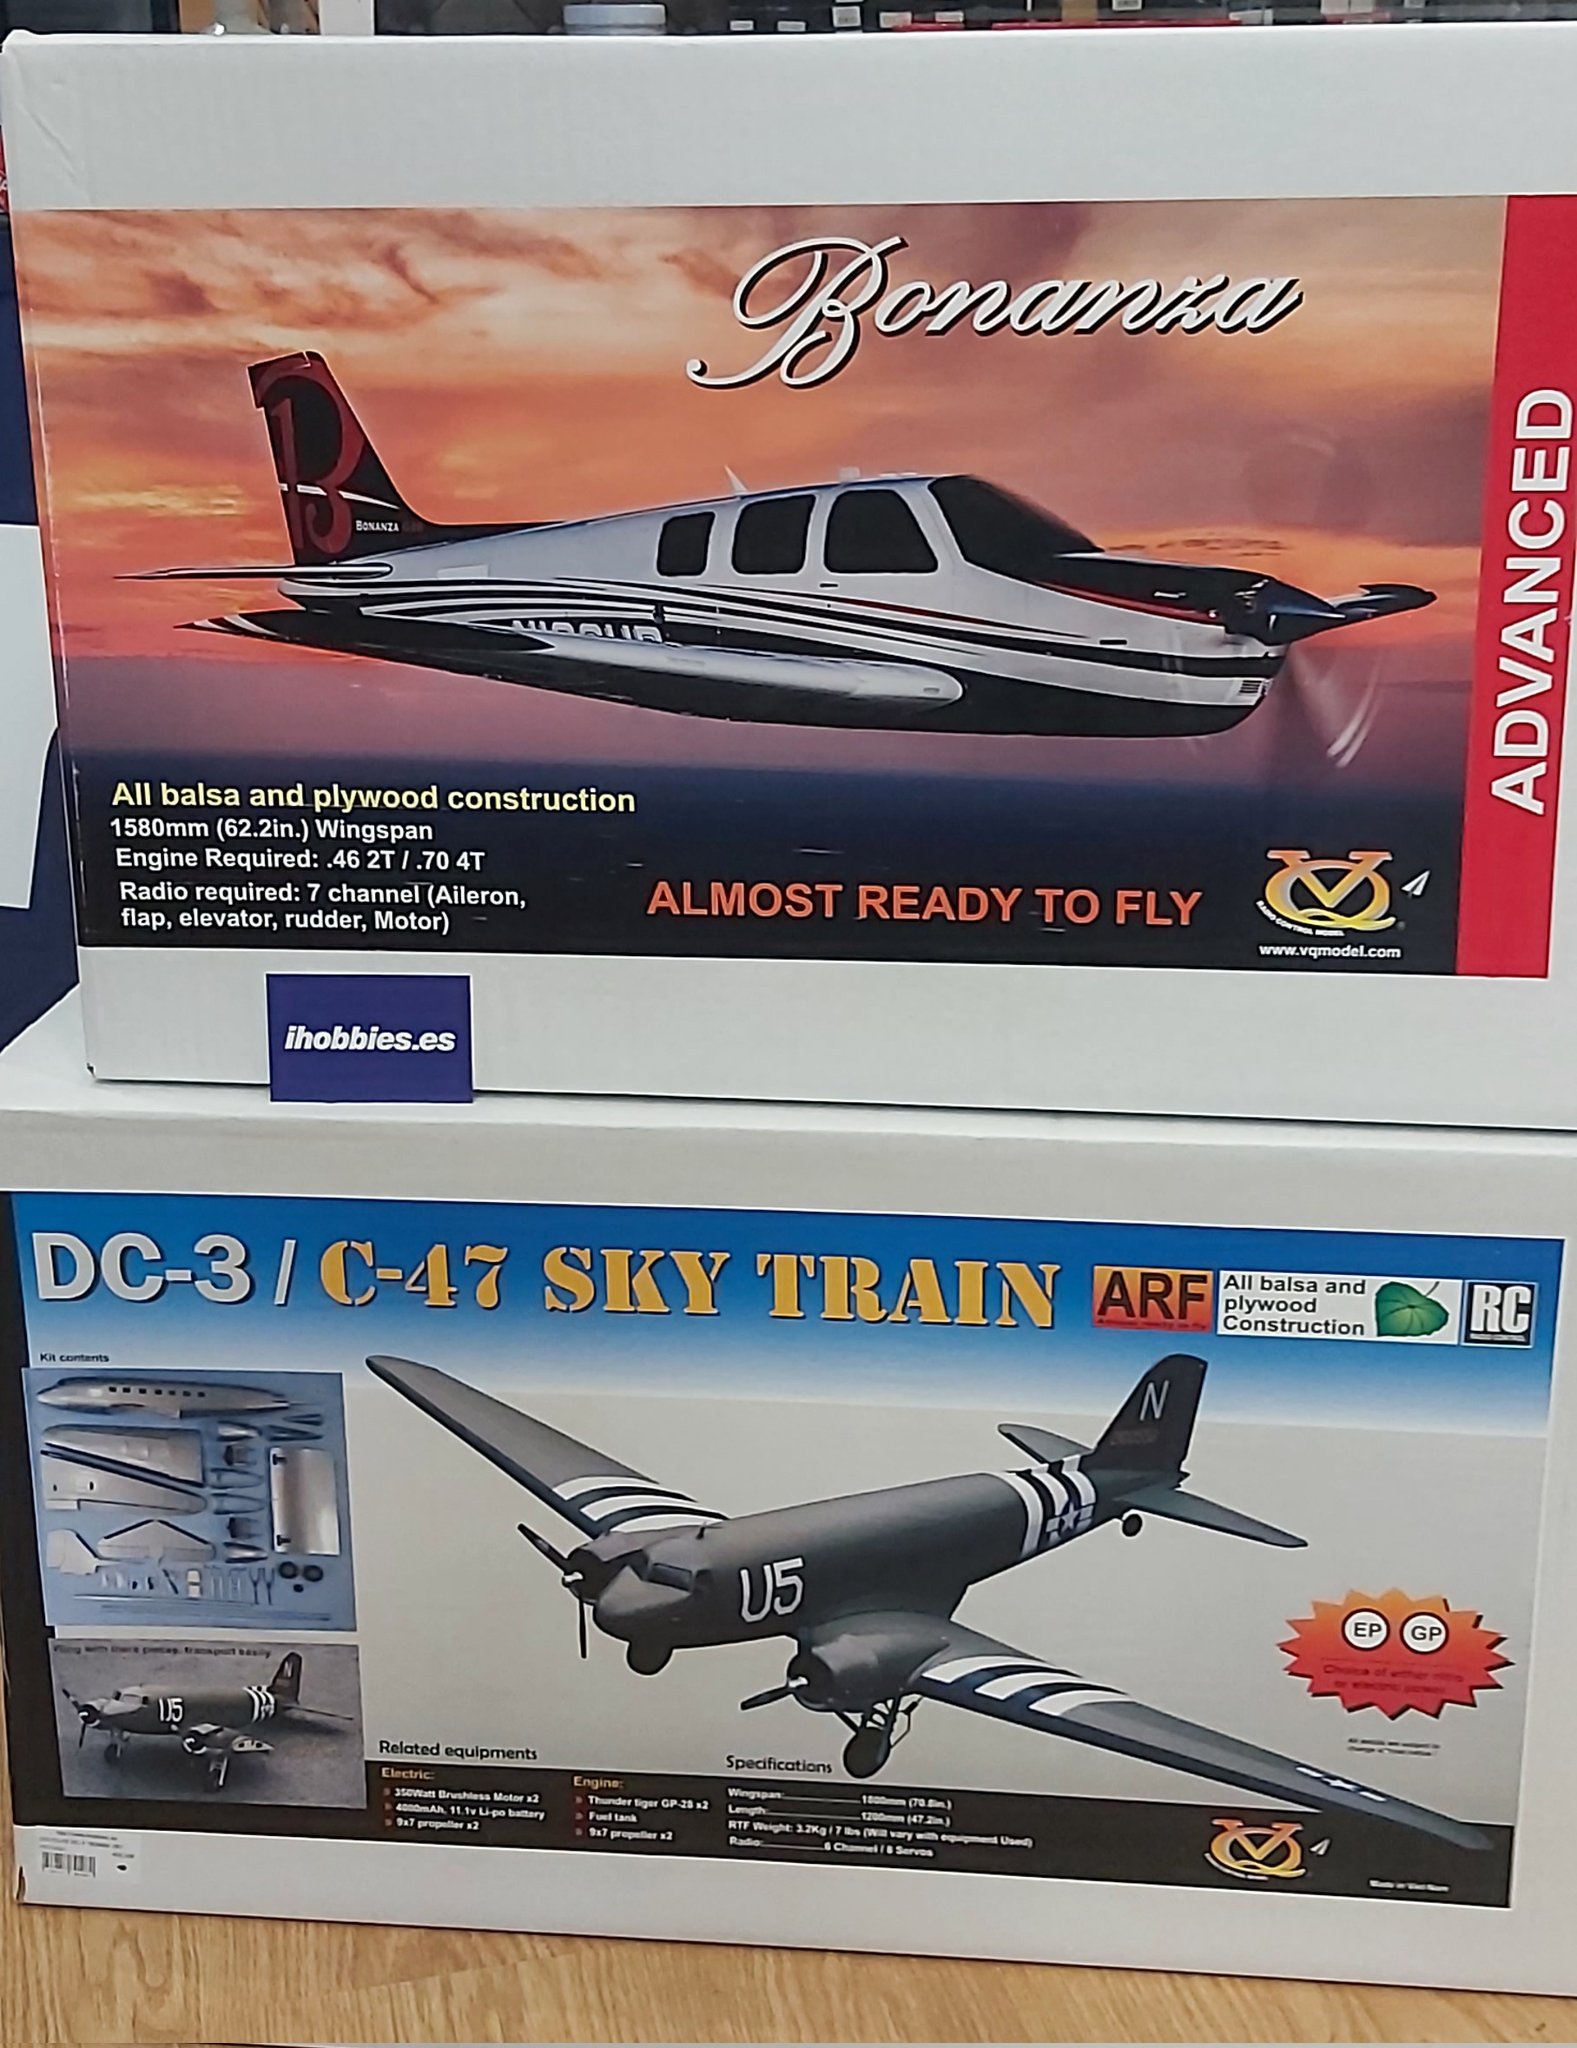 ihobbies.es on Twitter: "Beechcraft Bonanza y Douglas DC3 en 2 preciosos para tu flota RC. En stock en #douglas #dc3 #beechcraft #beechcraftbonanza #aeromodelismo #rcplane #ihobbies #warbird #c47 https://t.co ...